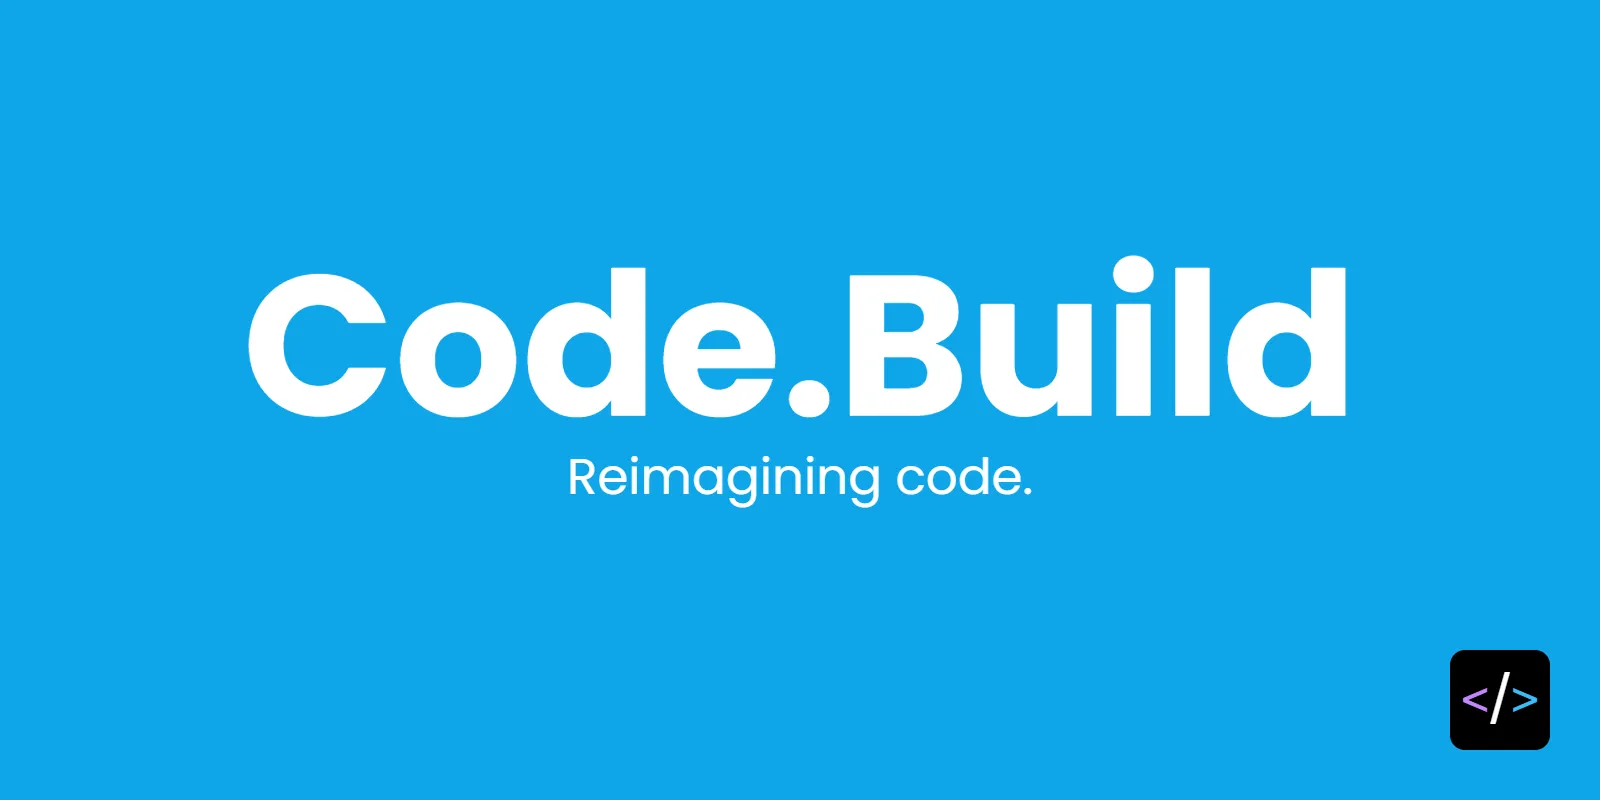 _images/code-build.webp